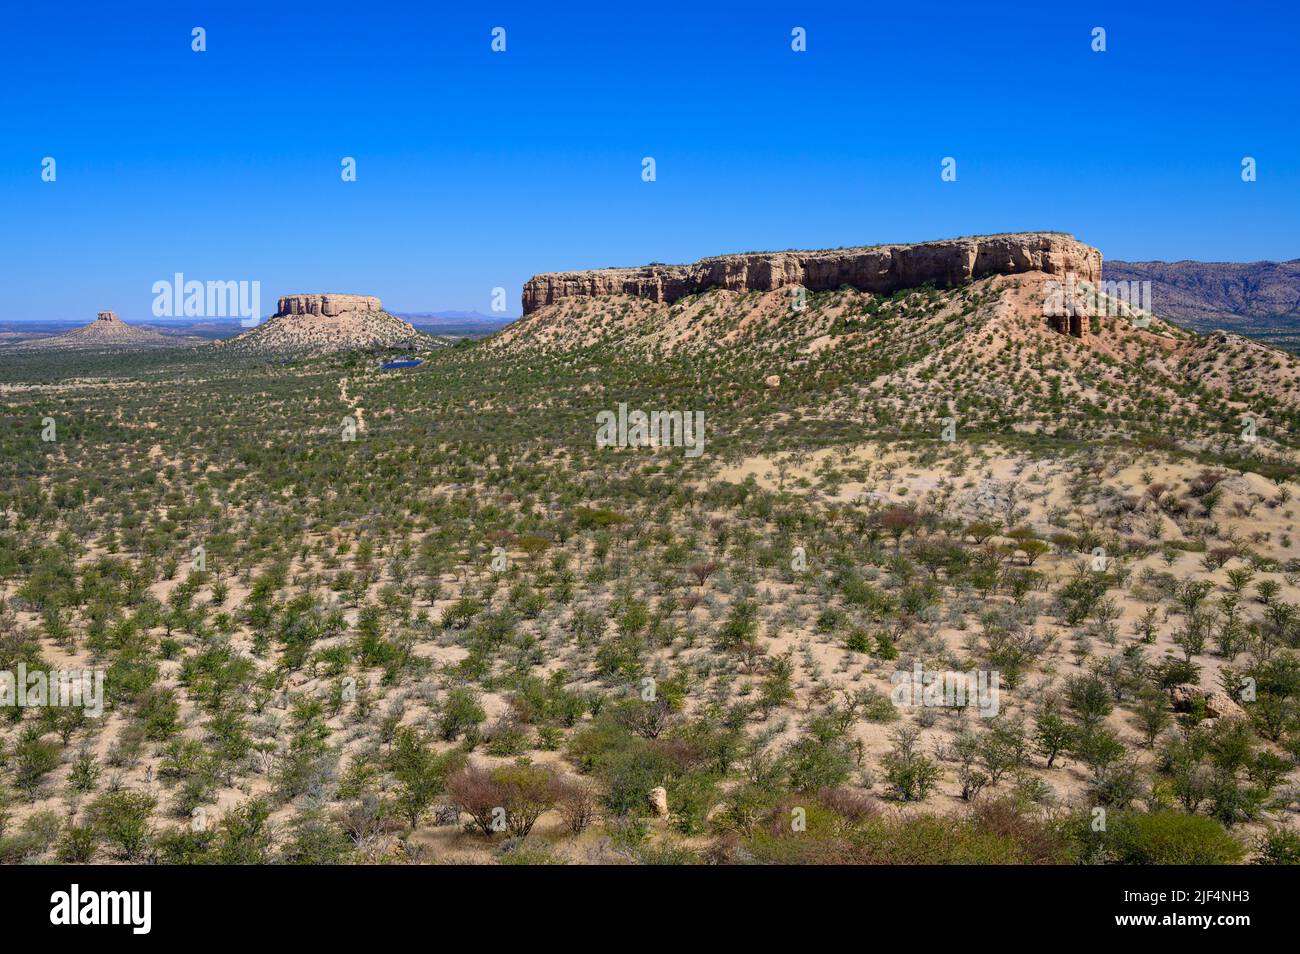 Geological leftover of Ugab terraces near Khorixas, Namibia Stock Photo